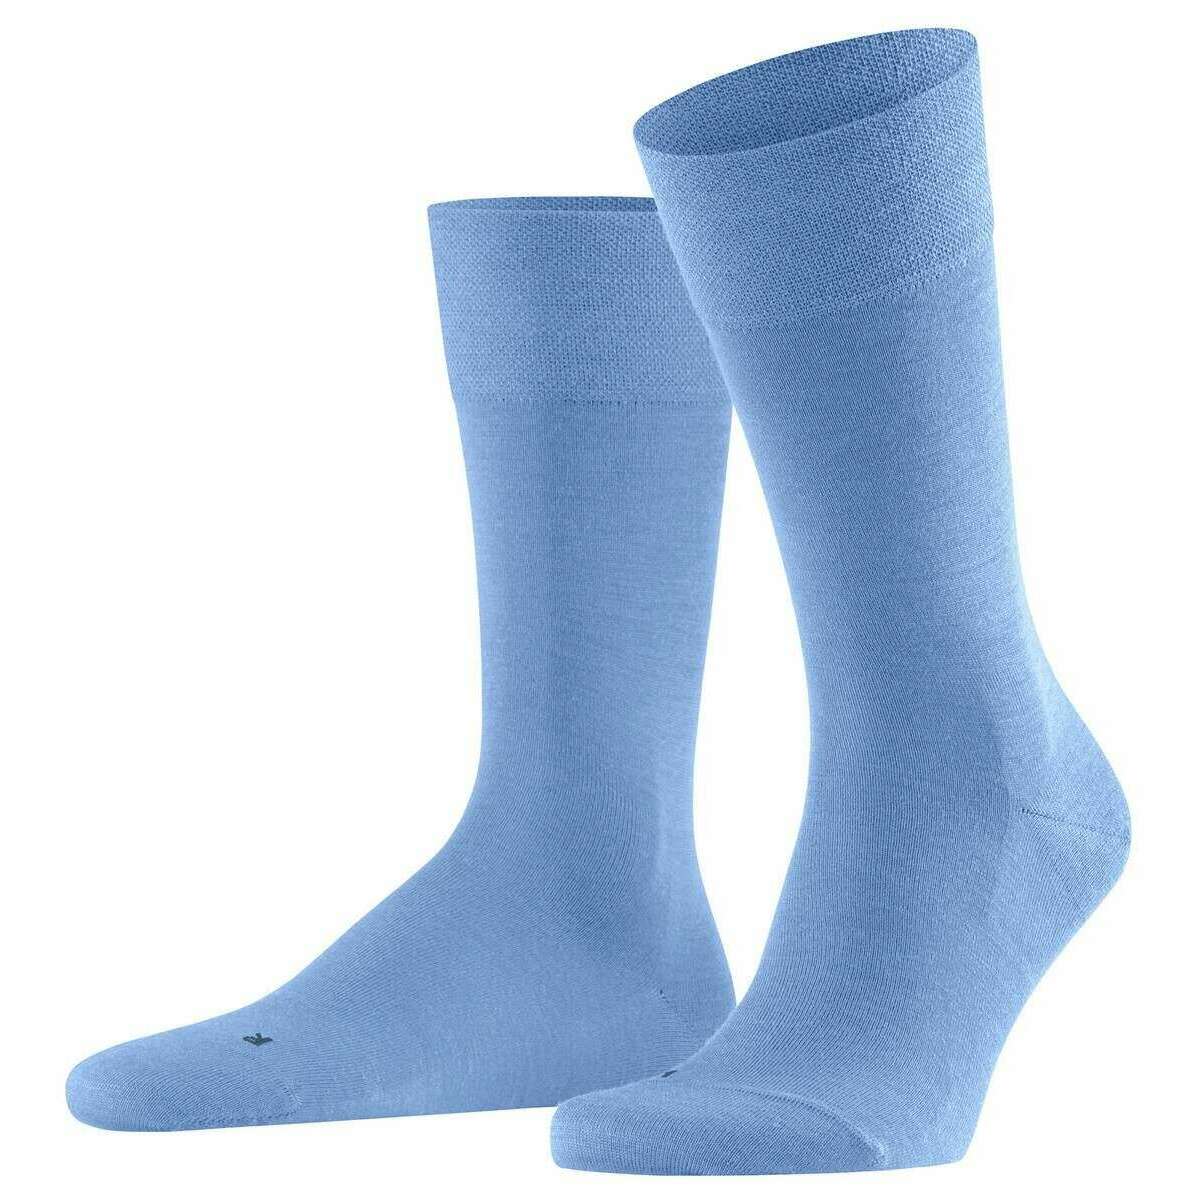 Falke Sensitive Berlin Socks - Artic Blue